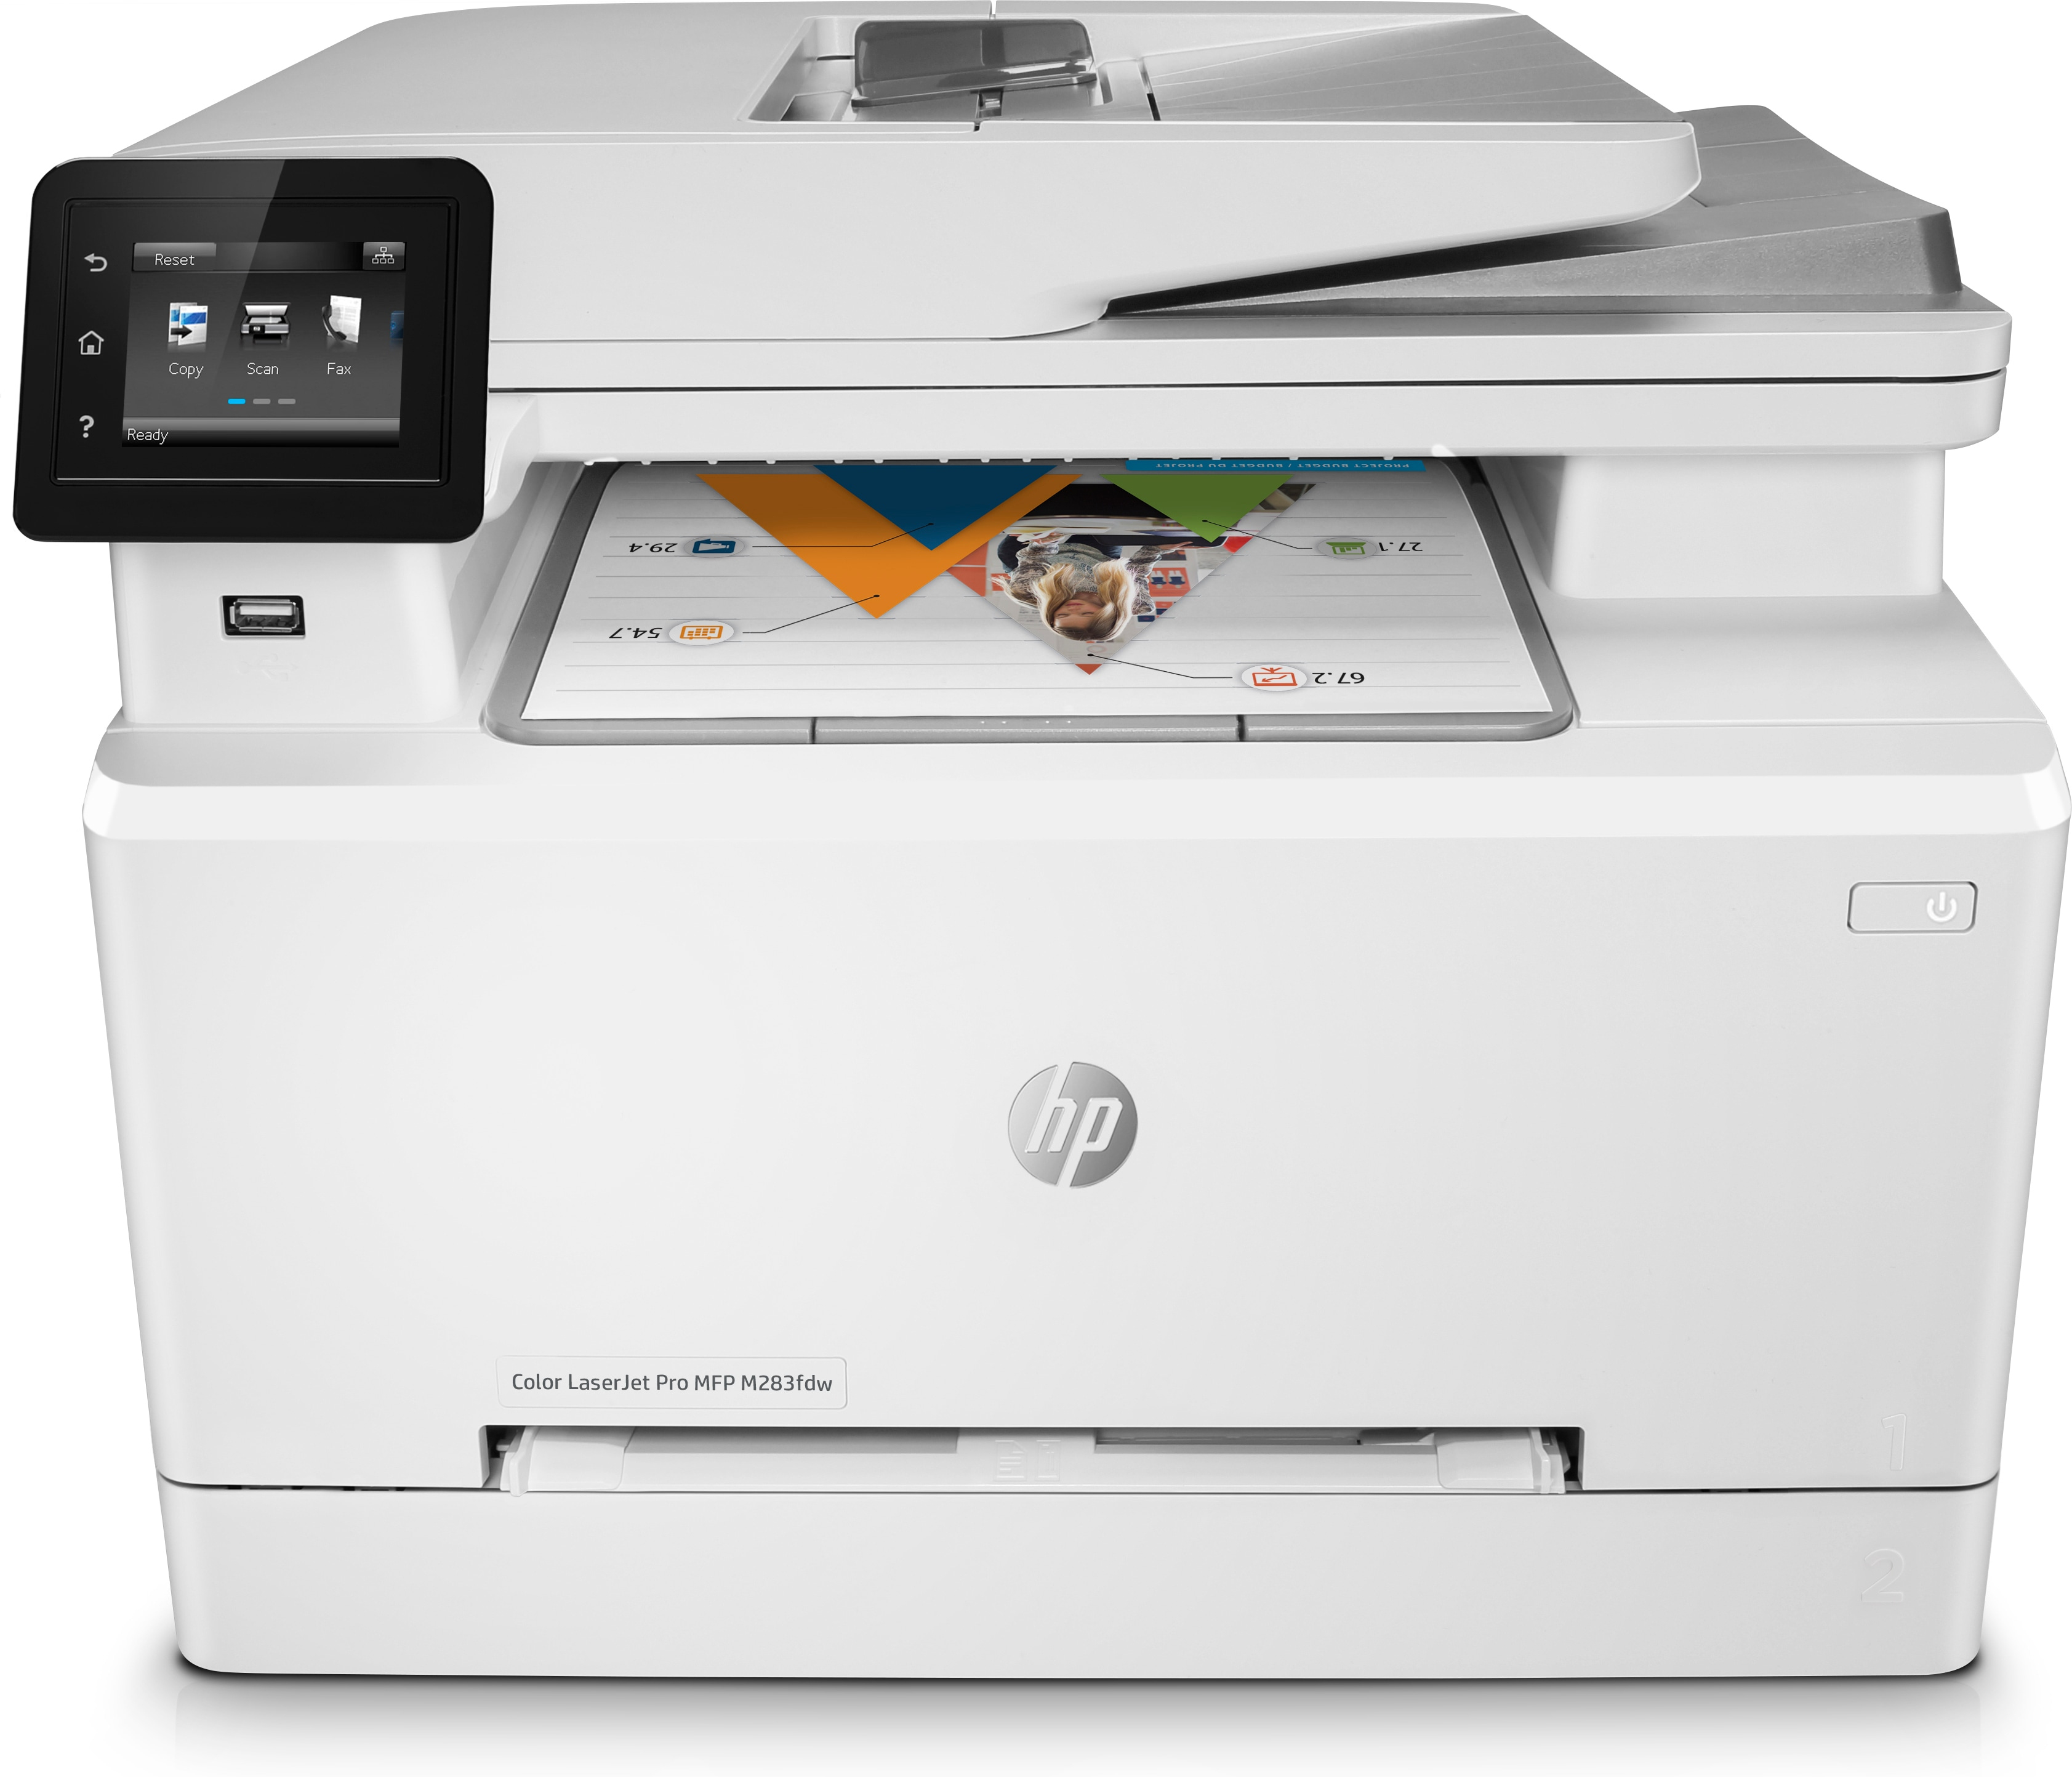 HP HP Color LaserJet Pro MFP M283fdw, Kleur, Printer voor Printen, kopi&#235;ren, scannen, faxen, Printen via USB-poort aan voorzijde; Scannen naar e-mail; Dubbelzijdig printen; ADF voor 50 vel ongekruld